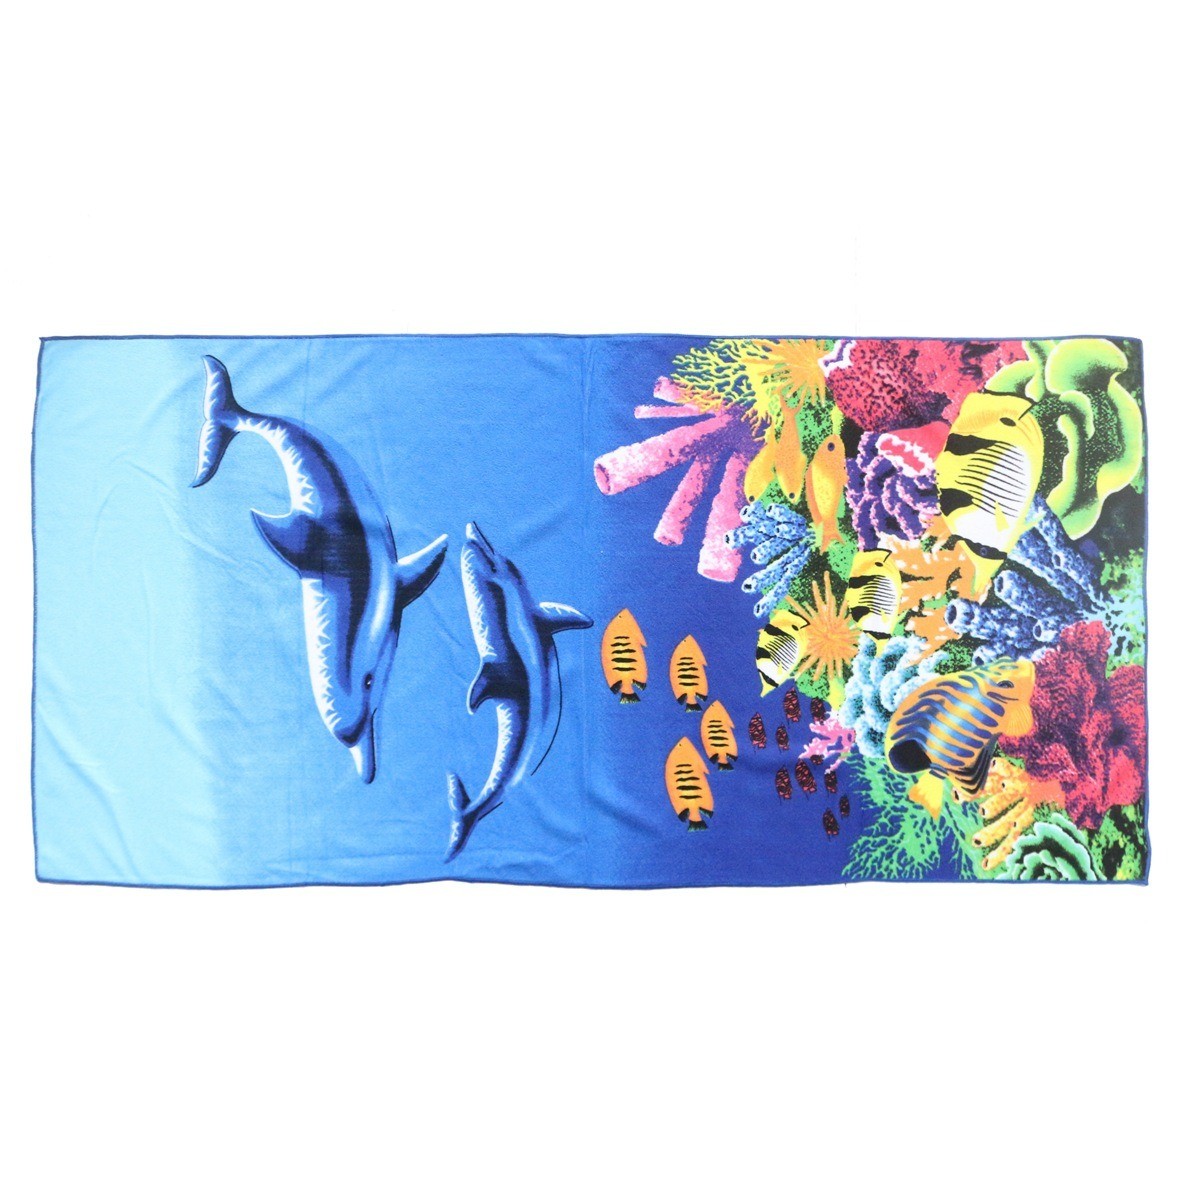 Buy cheap wholesale 70*140 cm 230 g custom Printed Beach towel microfiber fabrics cheap from wholesalers